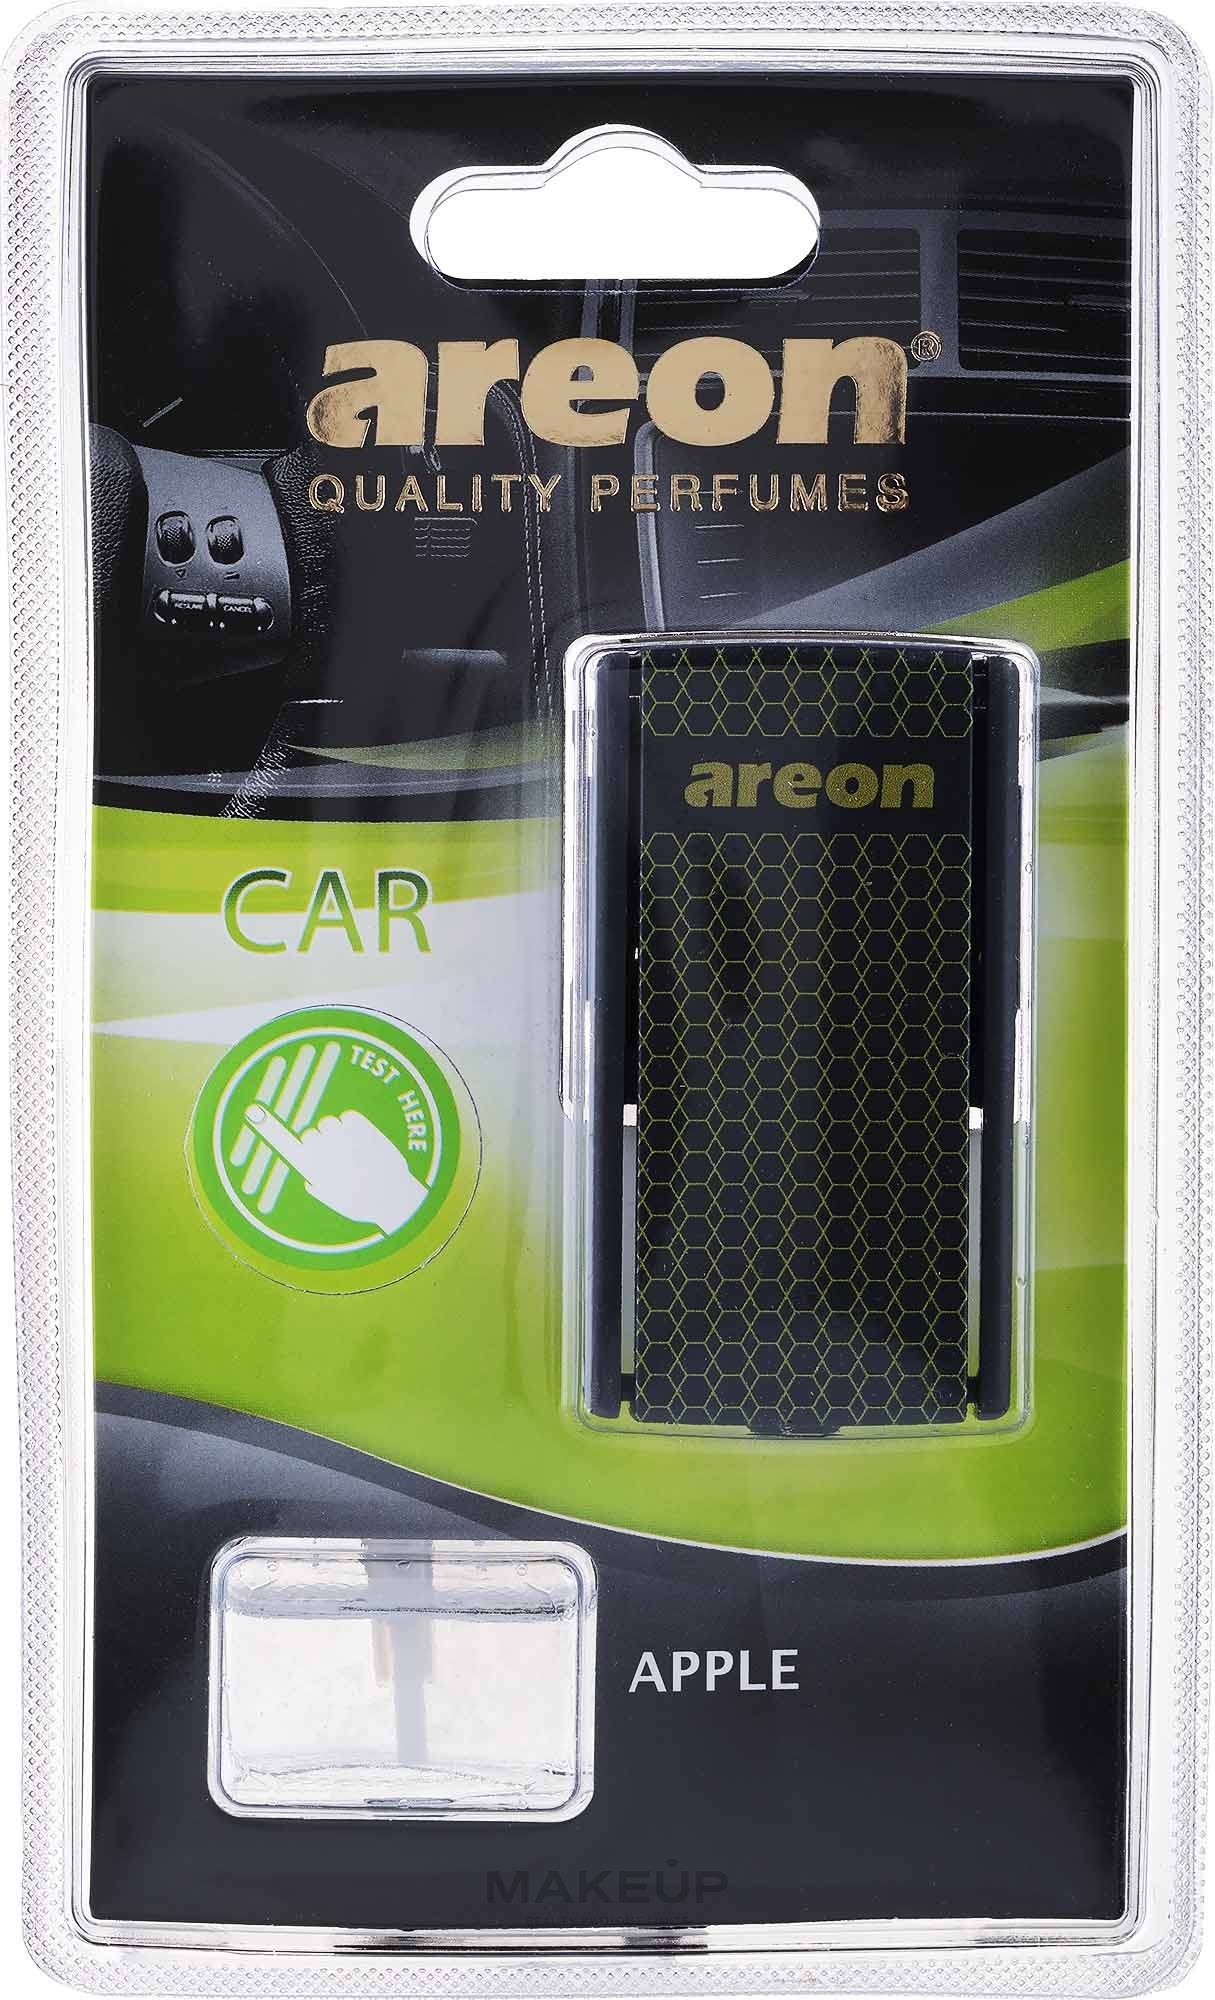 Odświeżacz powietrza Apple - Areon Car Blister Apple — Zdjęcie 8 ml